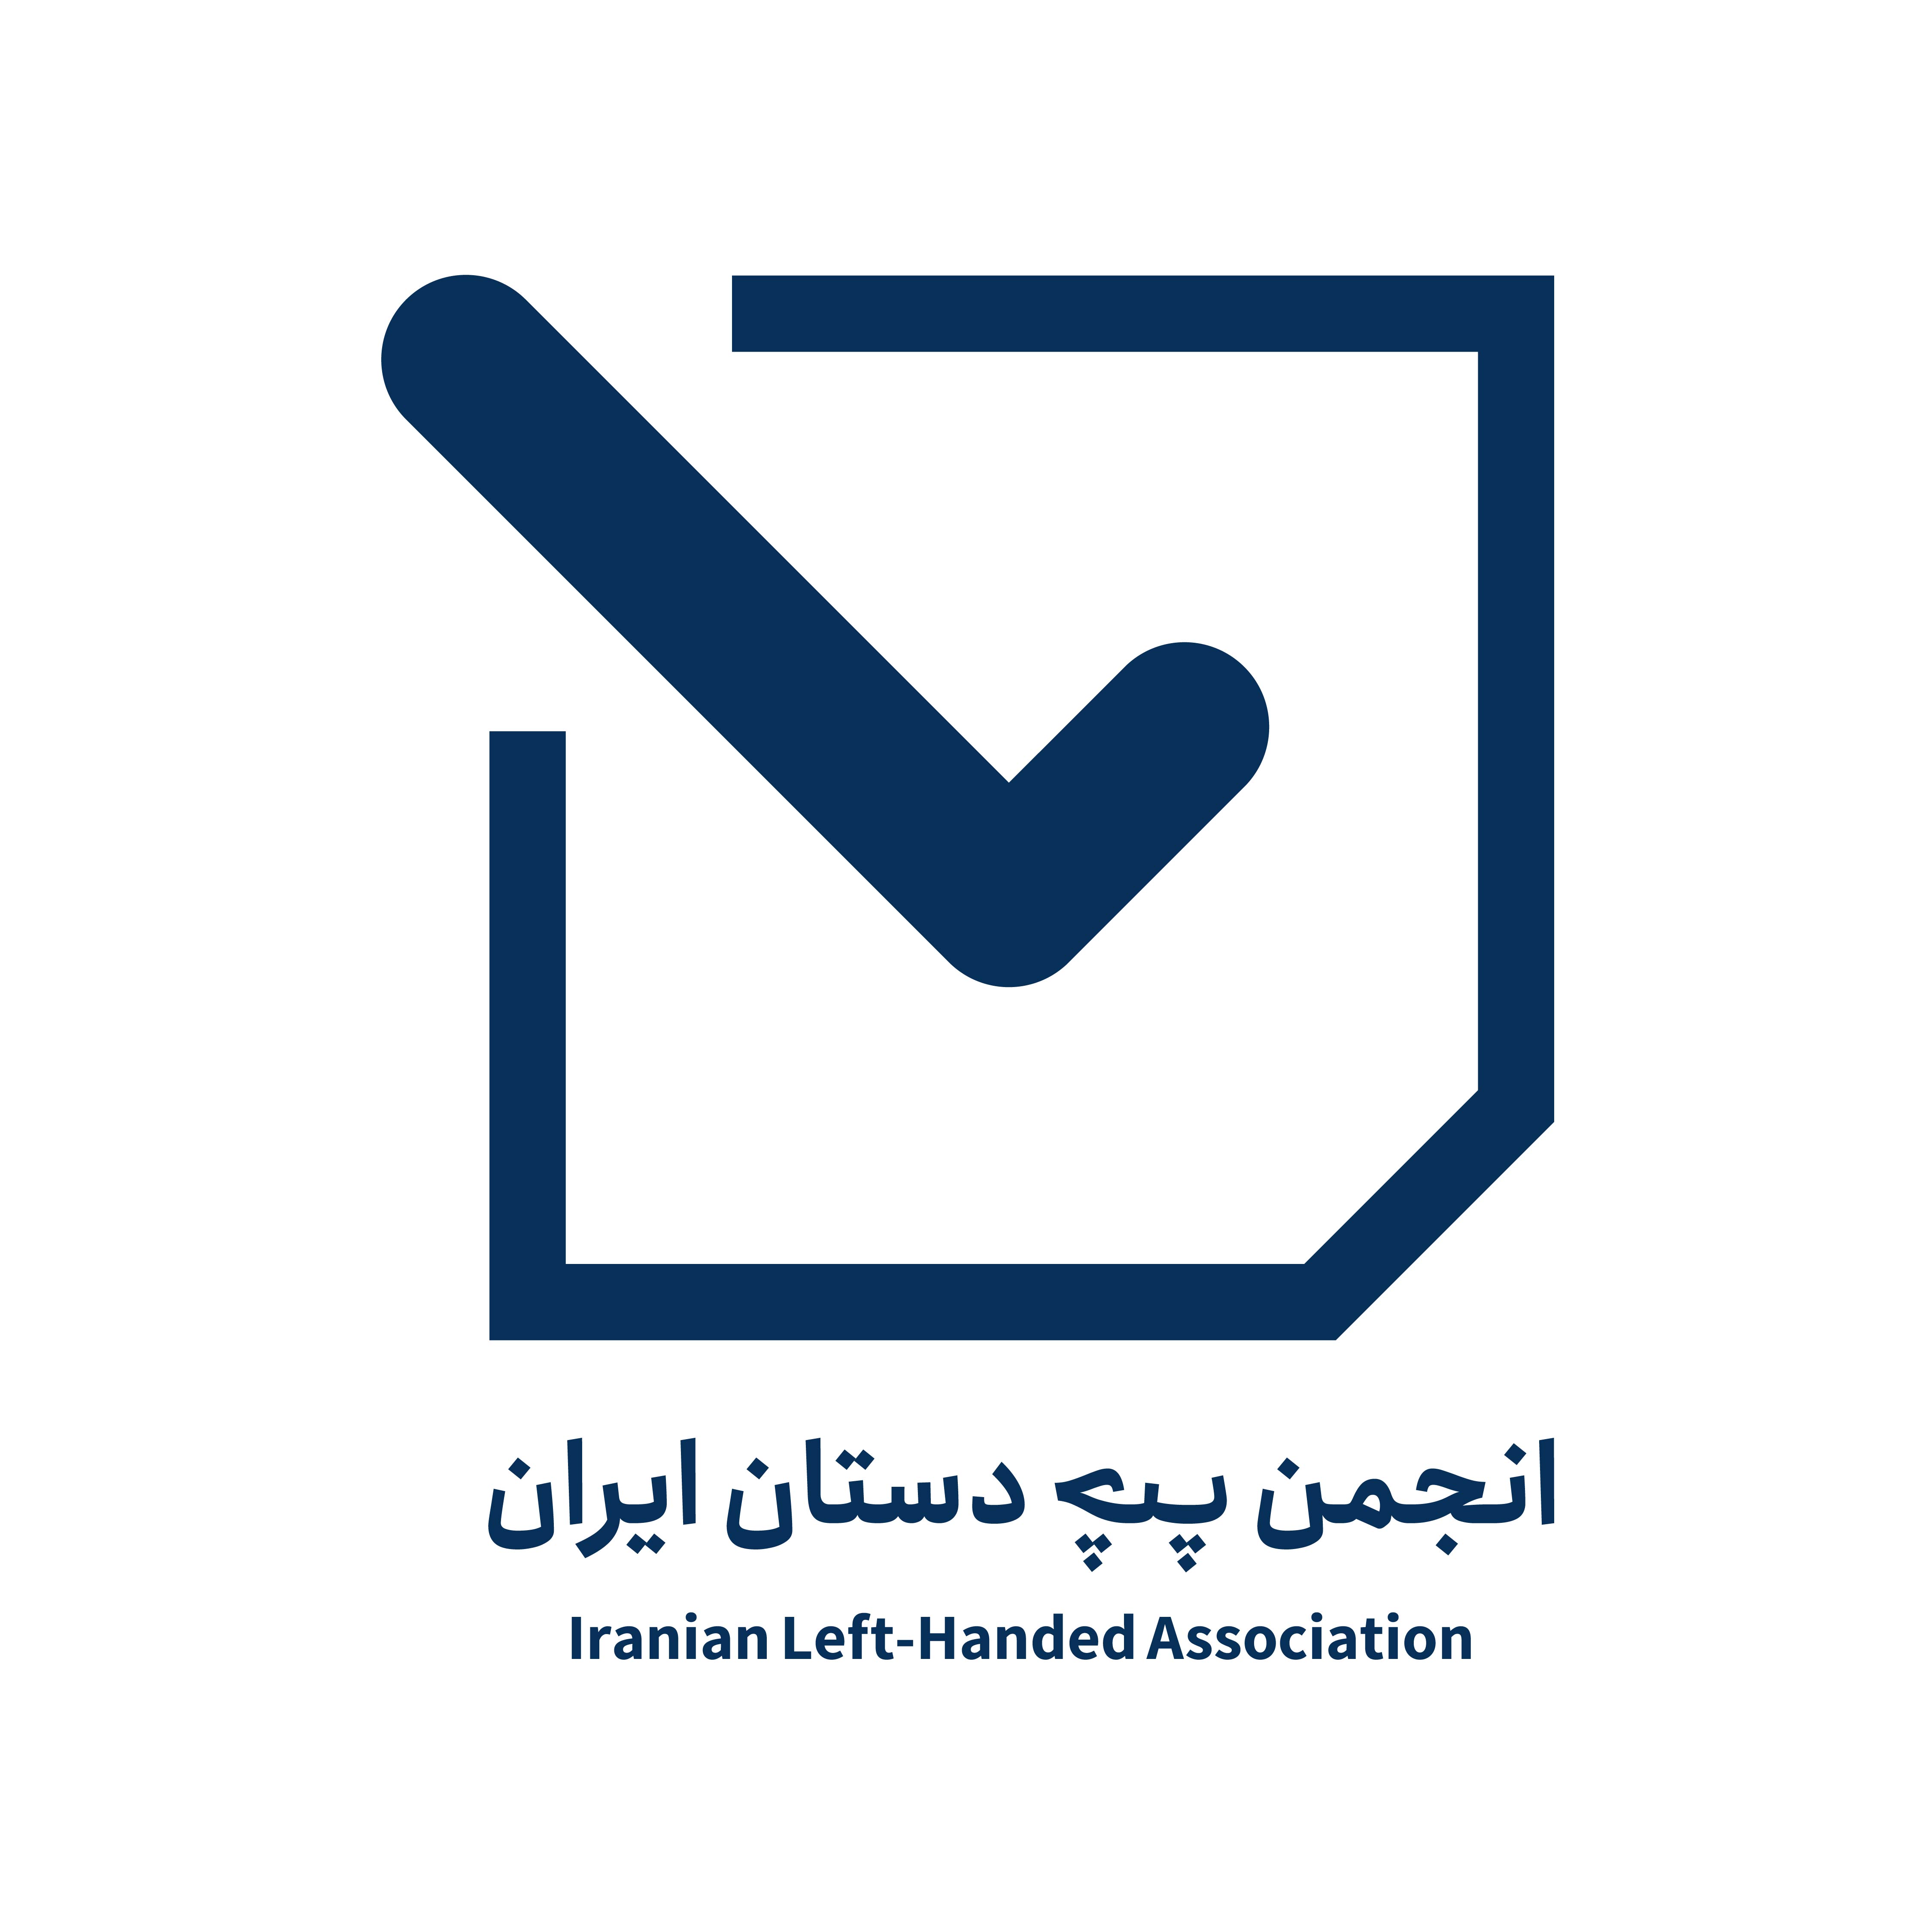 لوگوی انجمن چپ دستان ایران